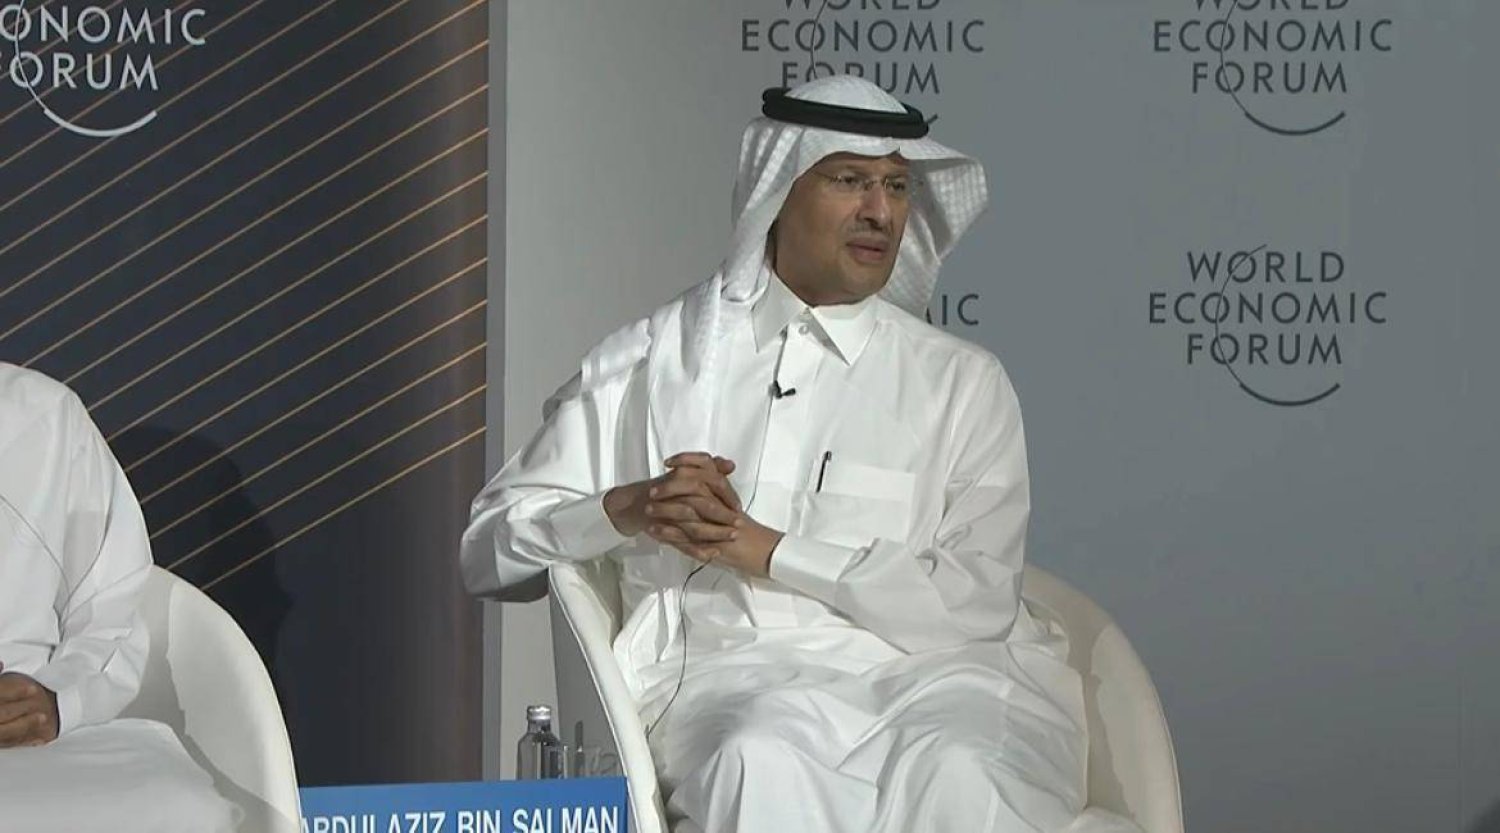 الأمير عبد العزيز بن سلمان بن عبد العزيز متحدثاً للحضور خلال الجلسة الحوارية في المنتدى الاقتصادي العالمي (الشرق الأوسط)